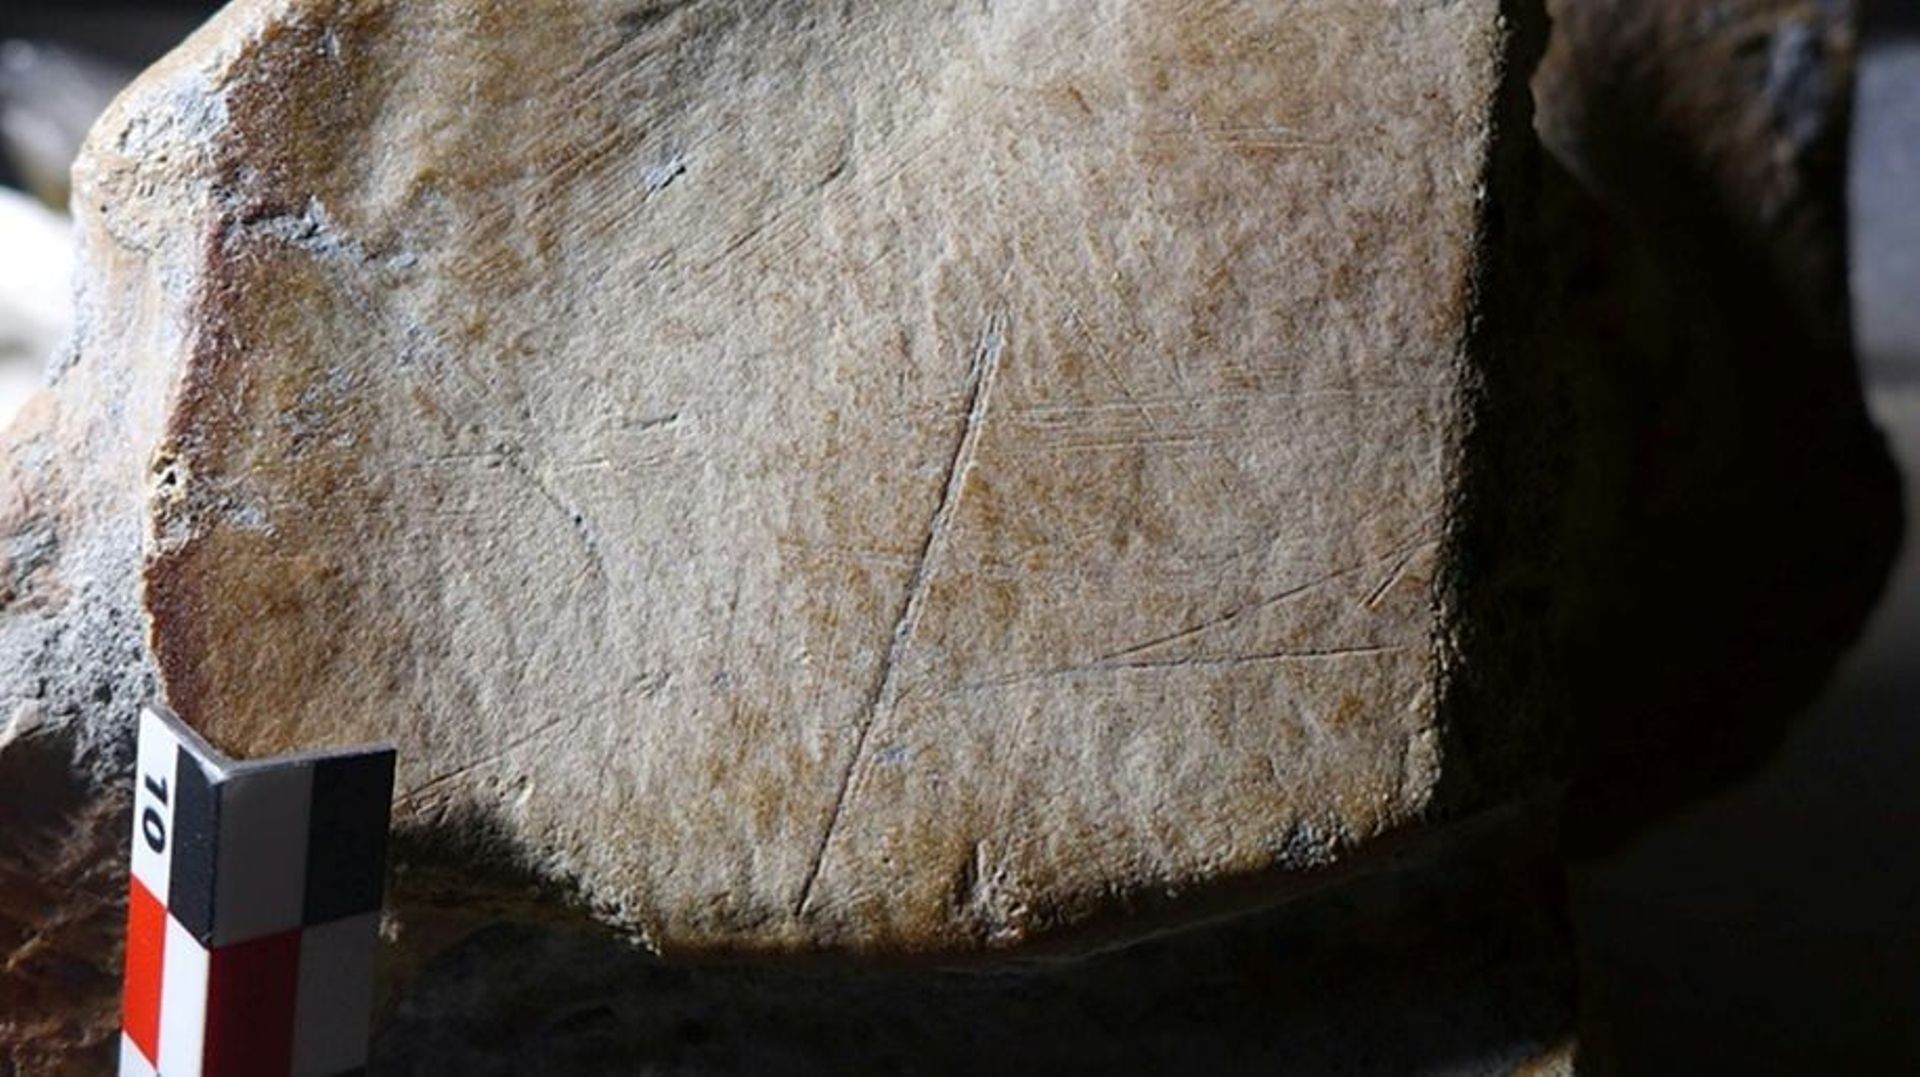 Image non datée fournie par l’université de Leyde aux Pays-bas montrant des entailles dans un os d’éléphant à défenses droites, ayant selon une étude été chassé par des Hommes de Néandertal